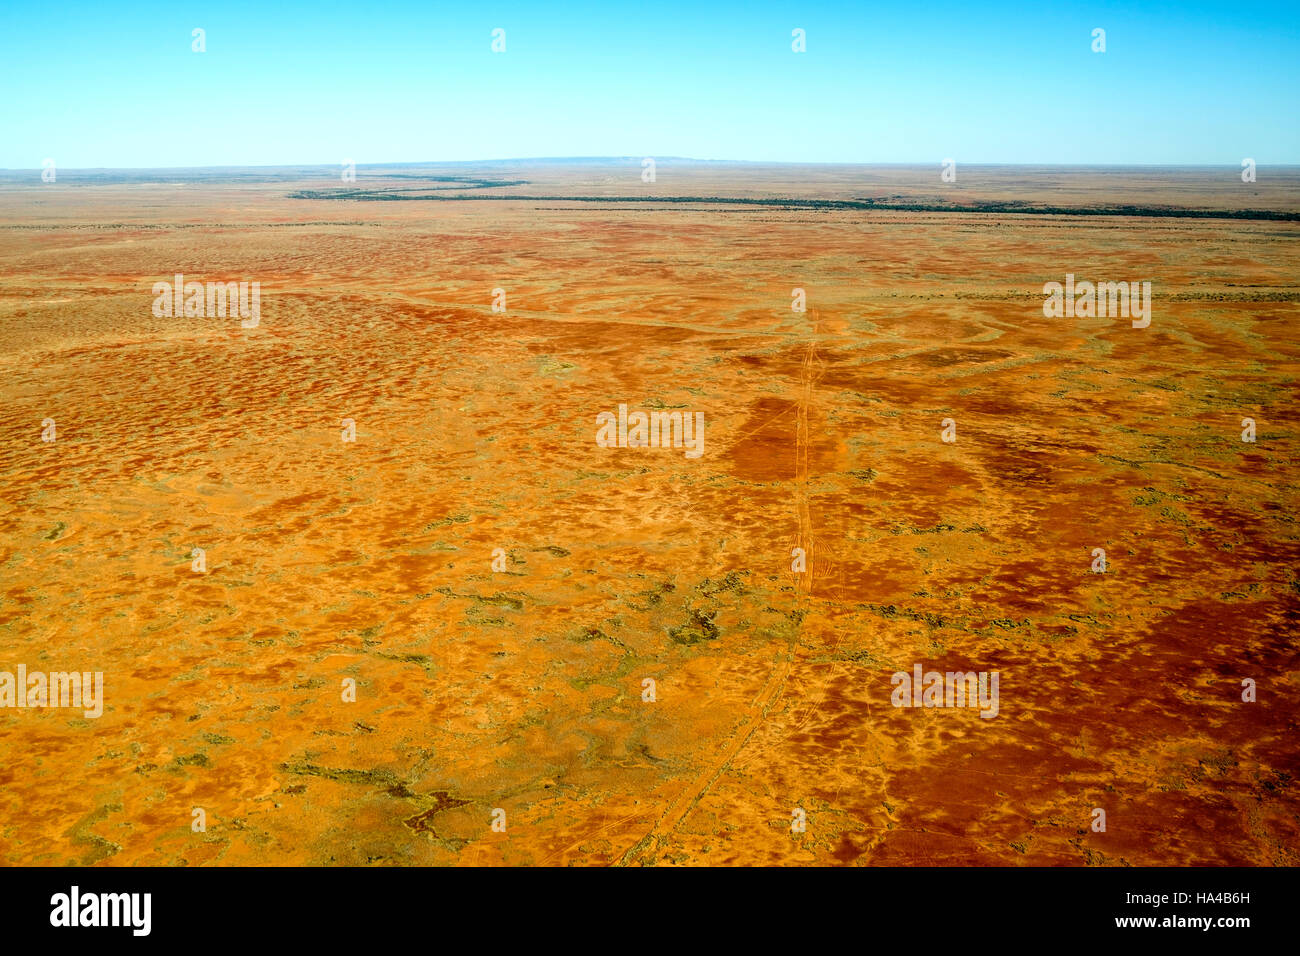 Une vue aérienne de ruisseaux traversant la région aride du désert de l'Outback australien en Australie du Sud du grand nord canadien. Banque D'Images